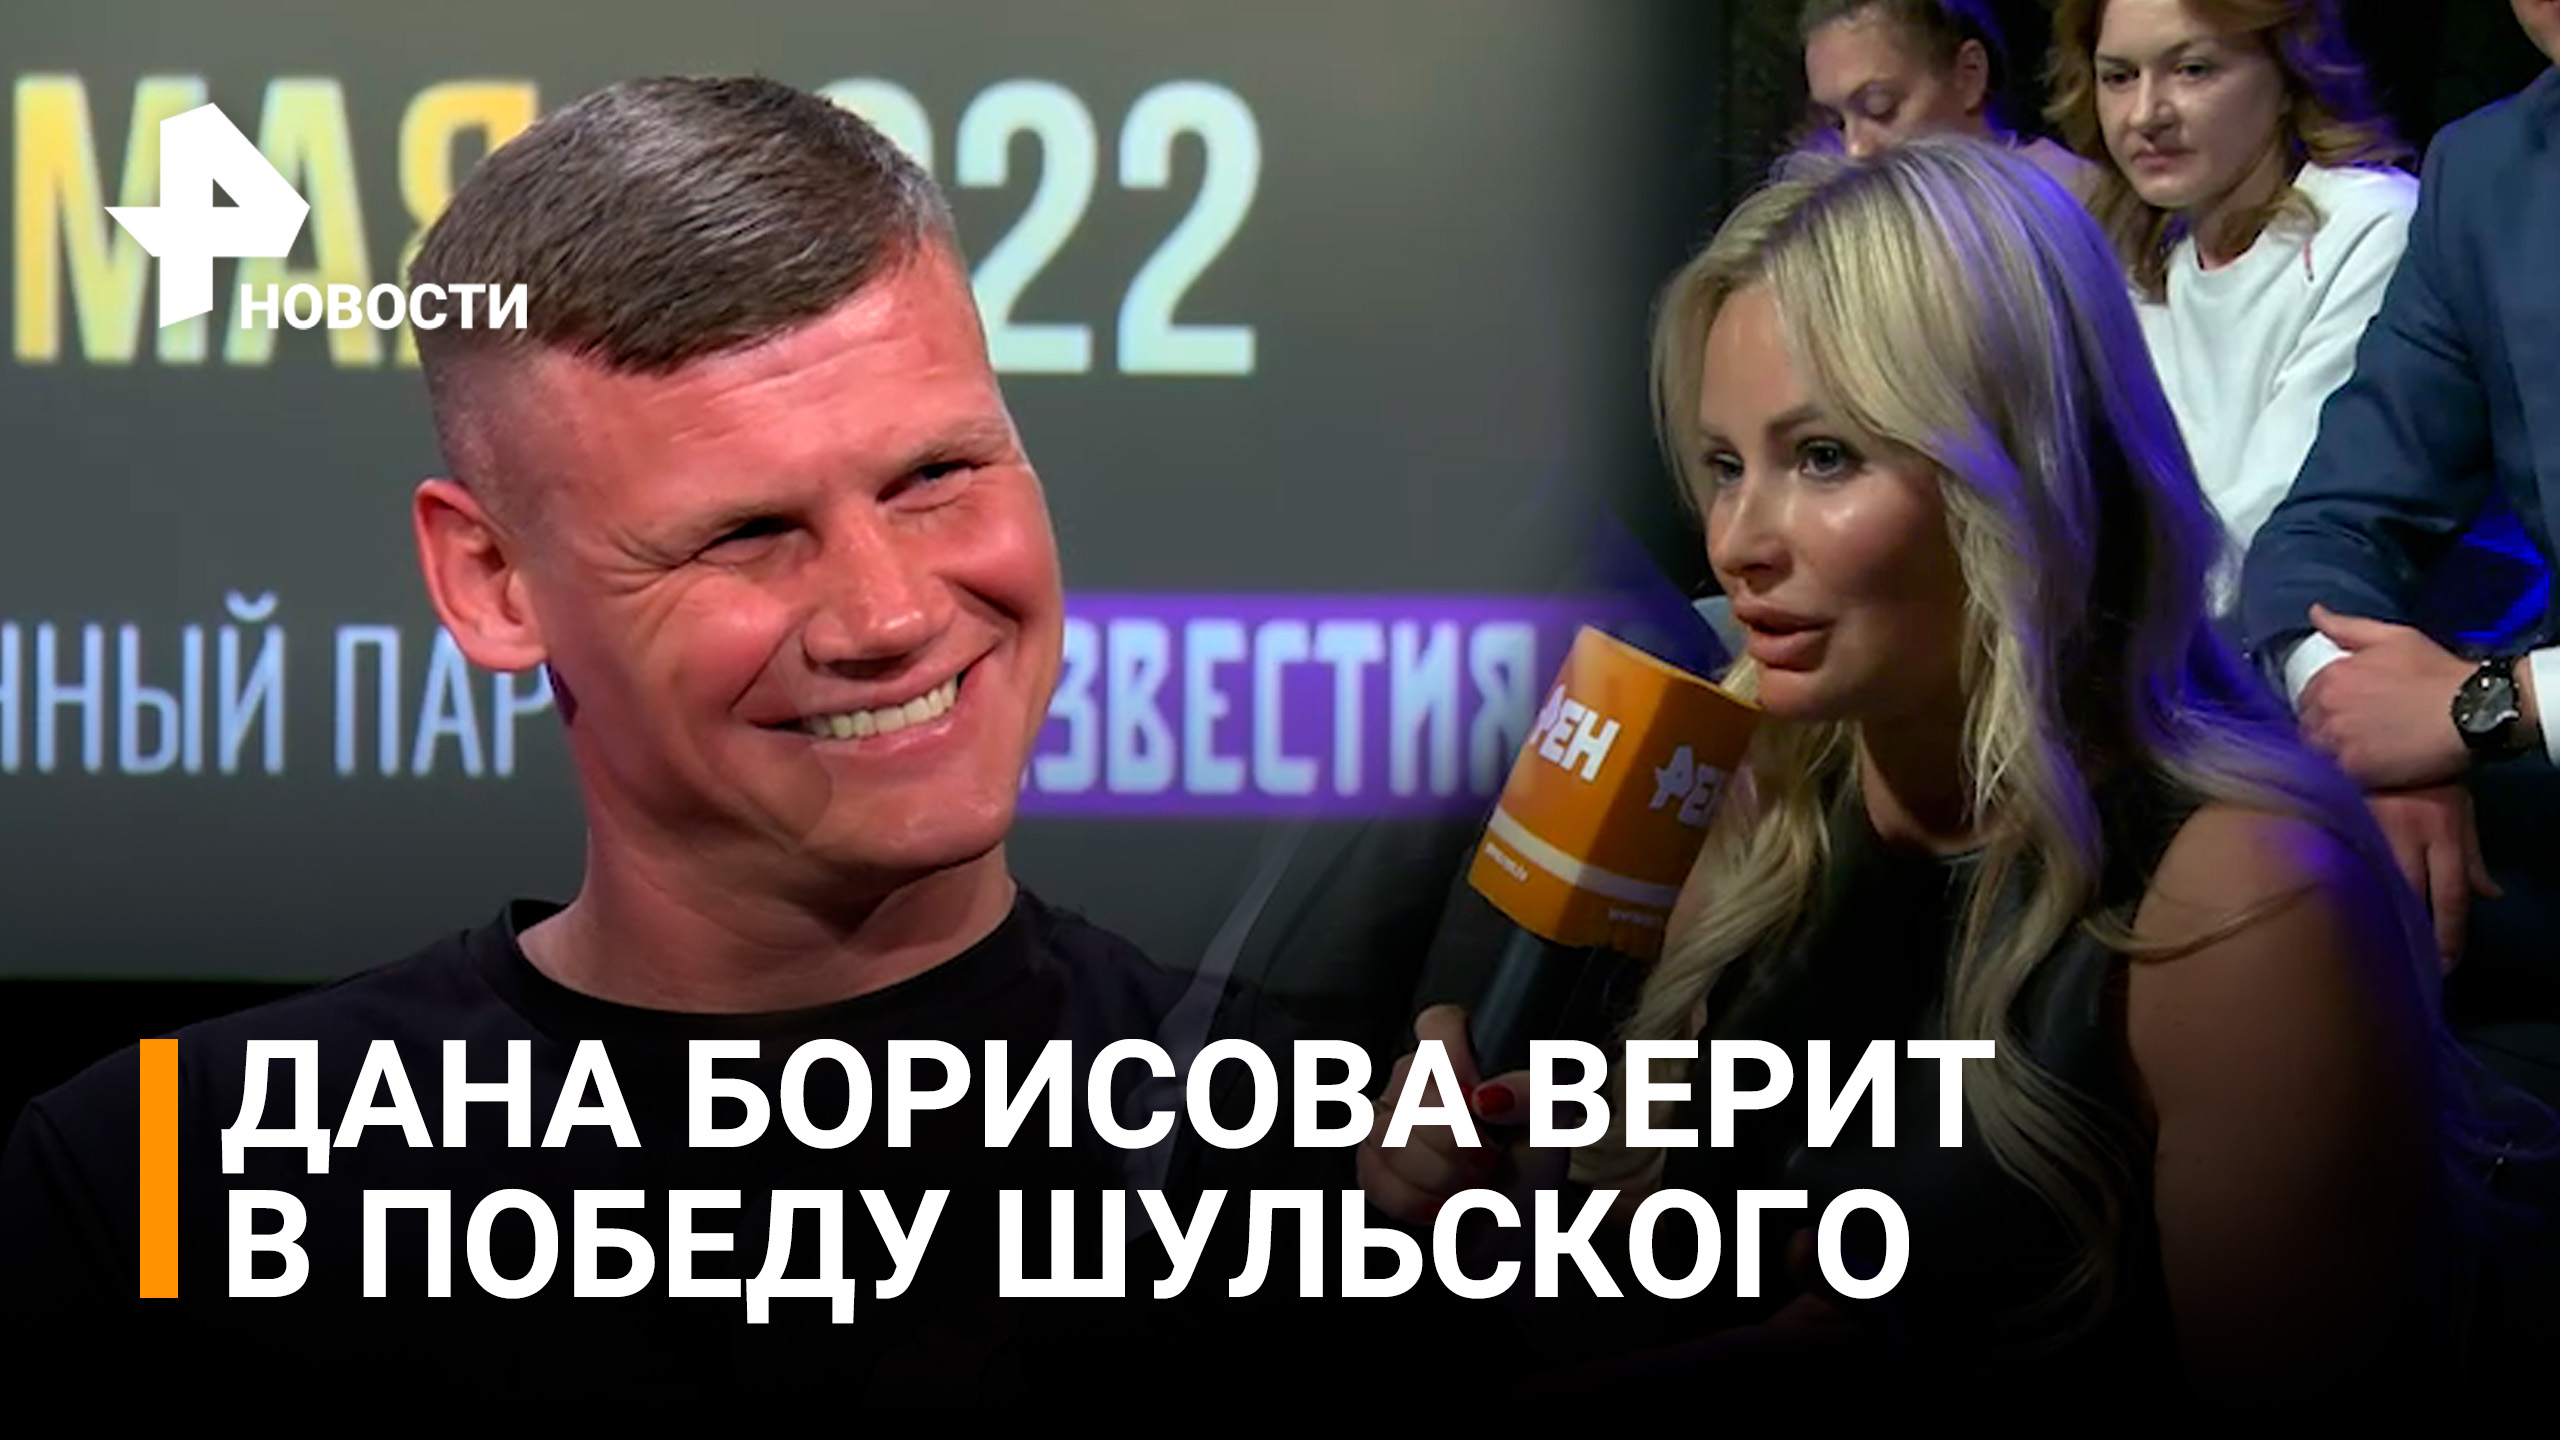 Дана Борисова верит в победу Павла Шульского на турнире суперсерии / Бойцовский клуб РЕН